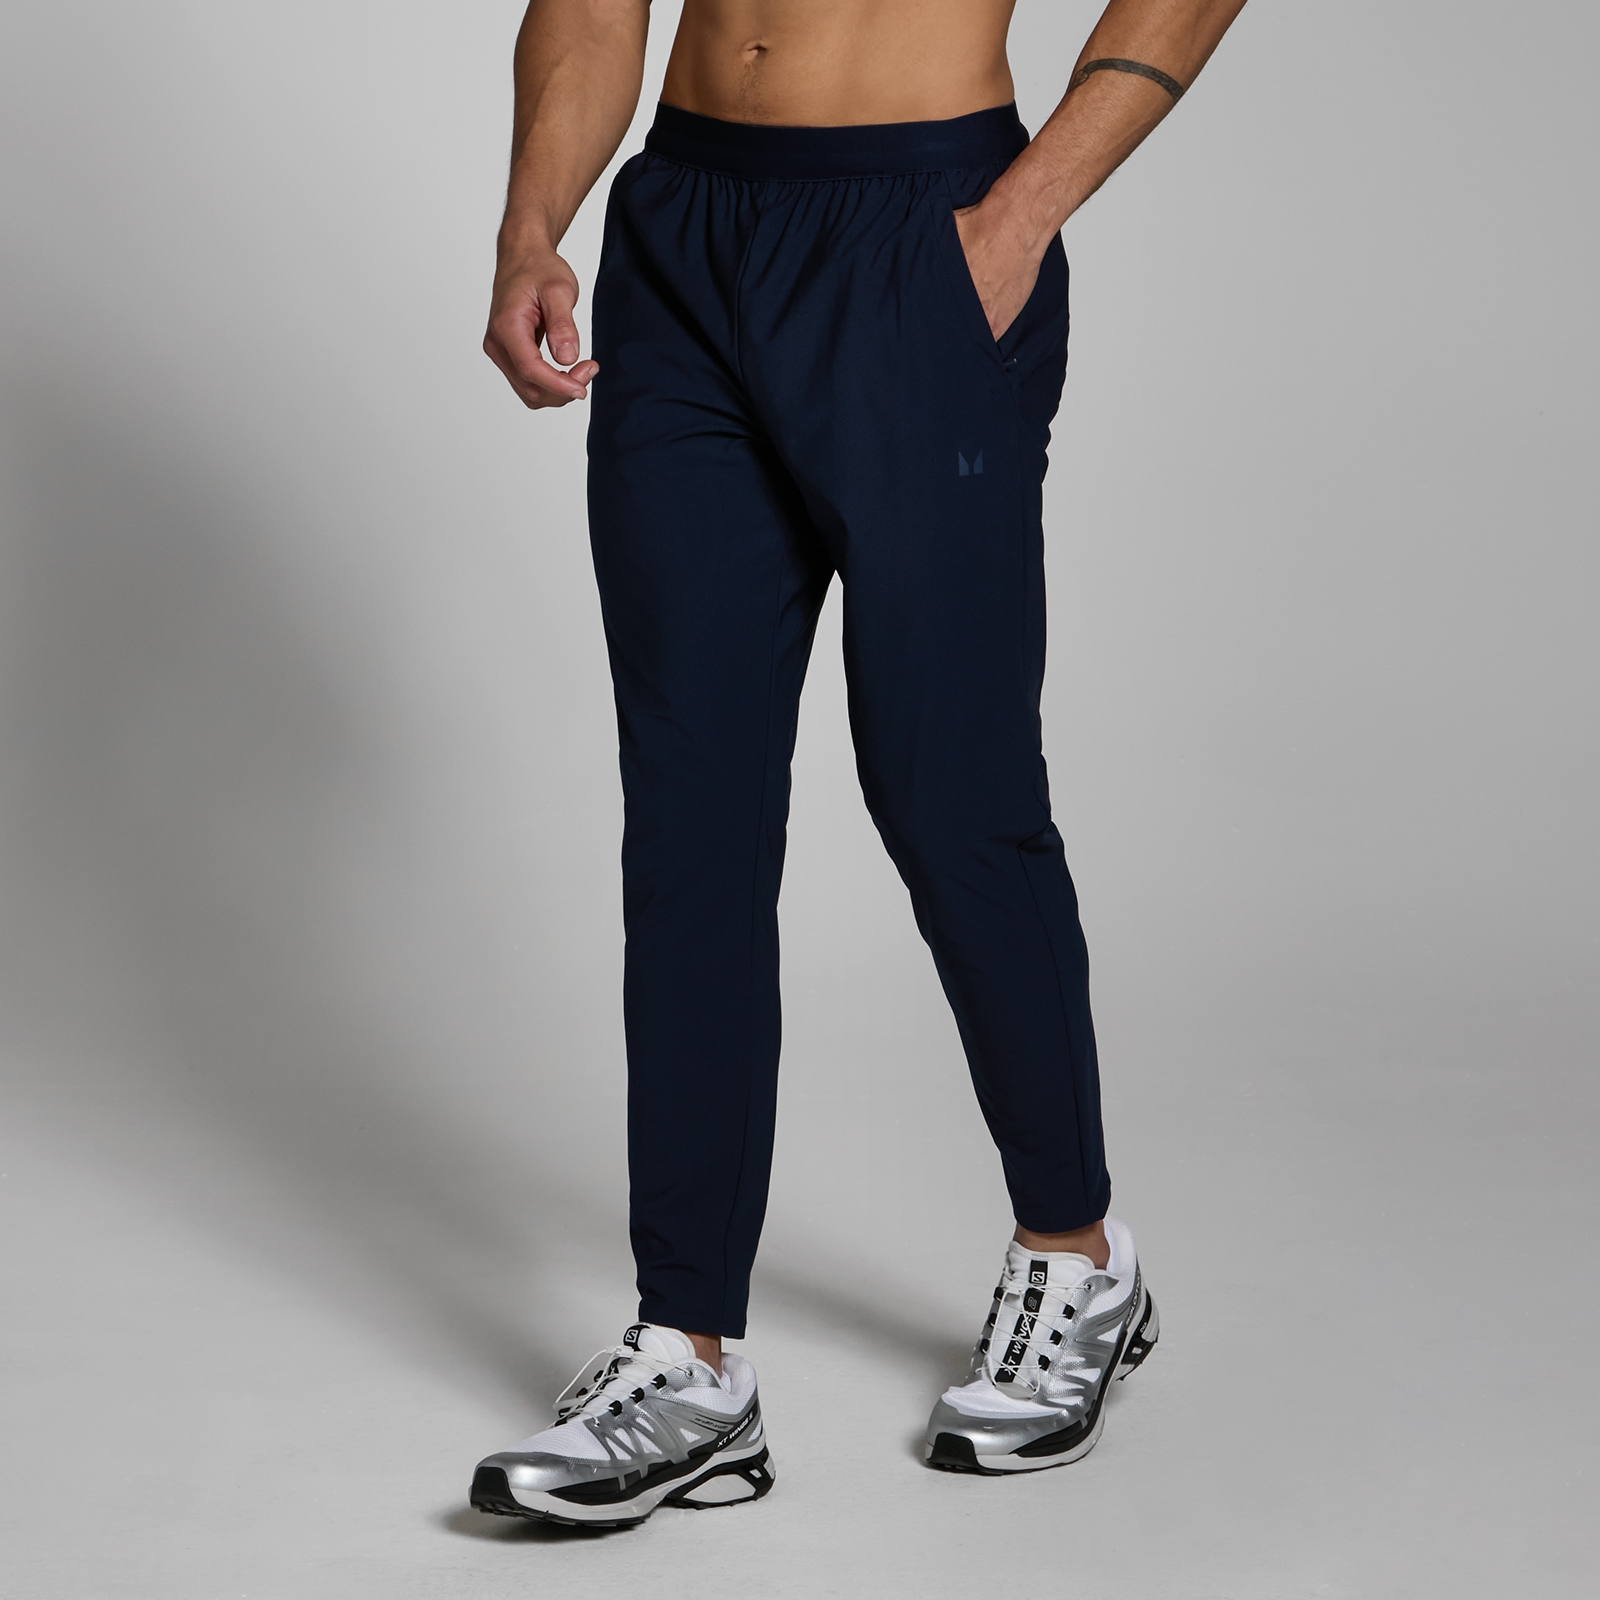 Image of Pantaloni da jogging in tessuto MP Lifestyle da uomo - Blu navy scuro - S